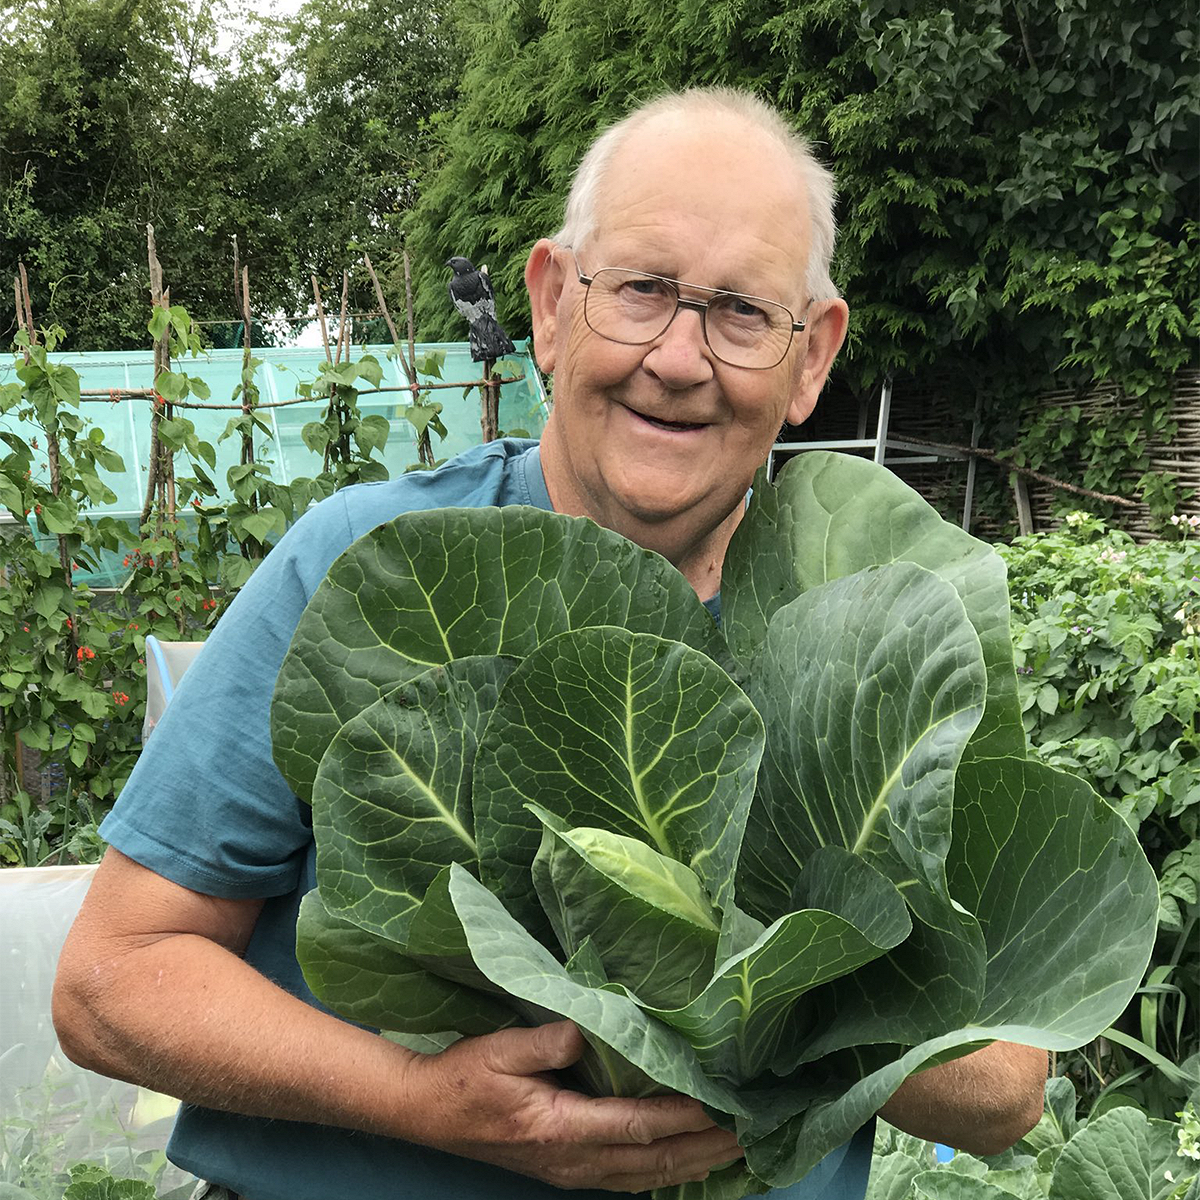 Сельдерей и капуста: твиттер в восторге от этого огородника и его гигантских овощей